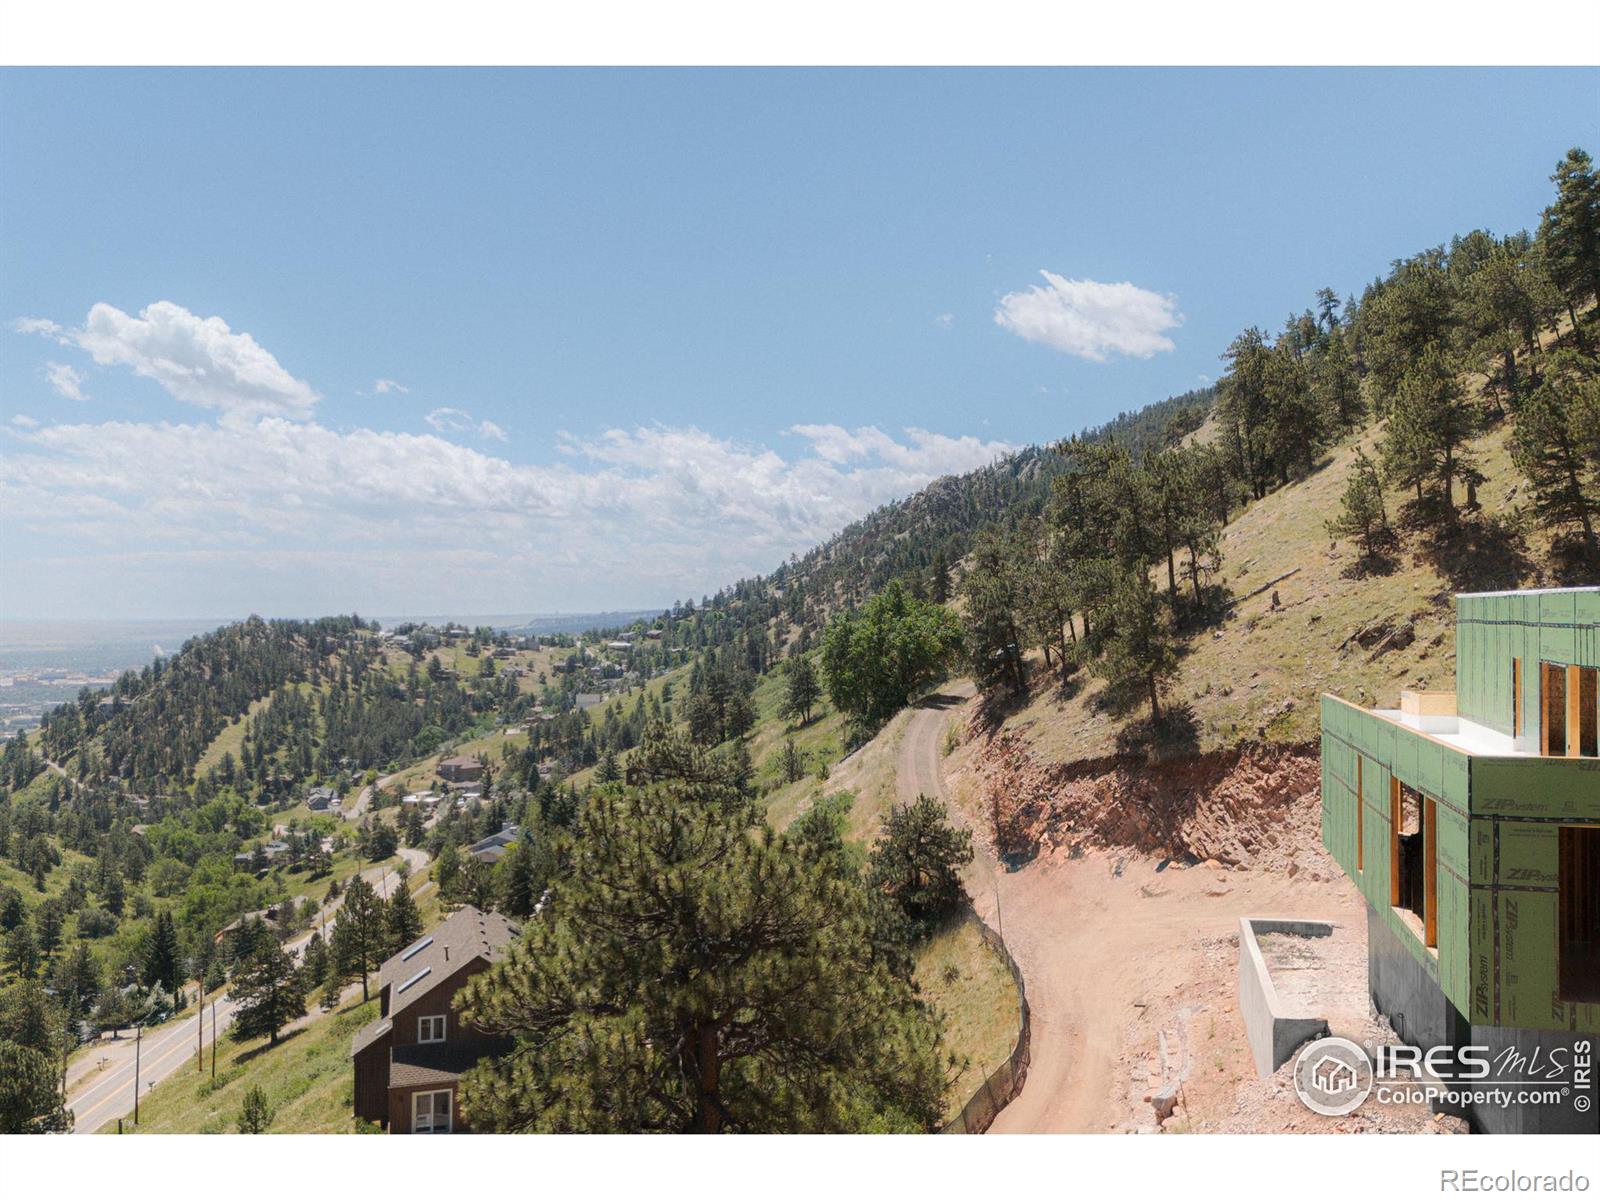 MLS Image #15 for 1575  linden drive,boulder, Colorado